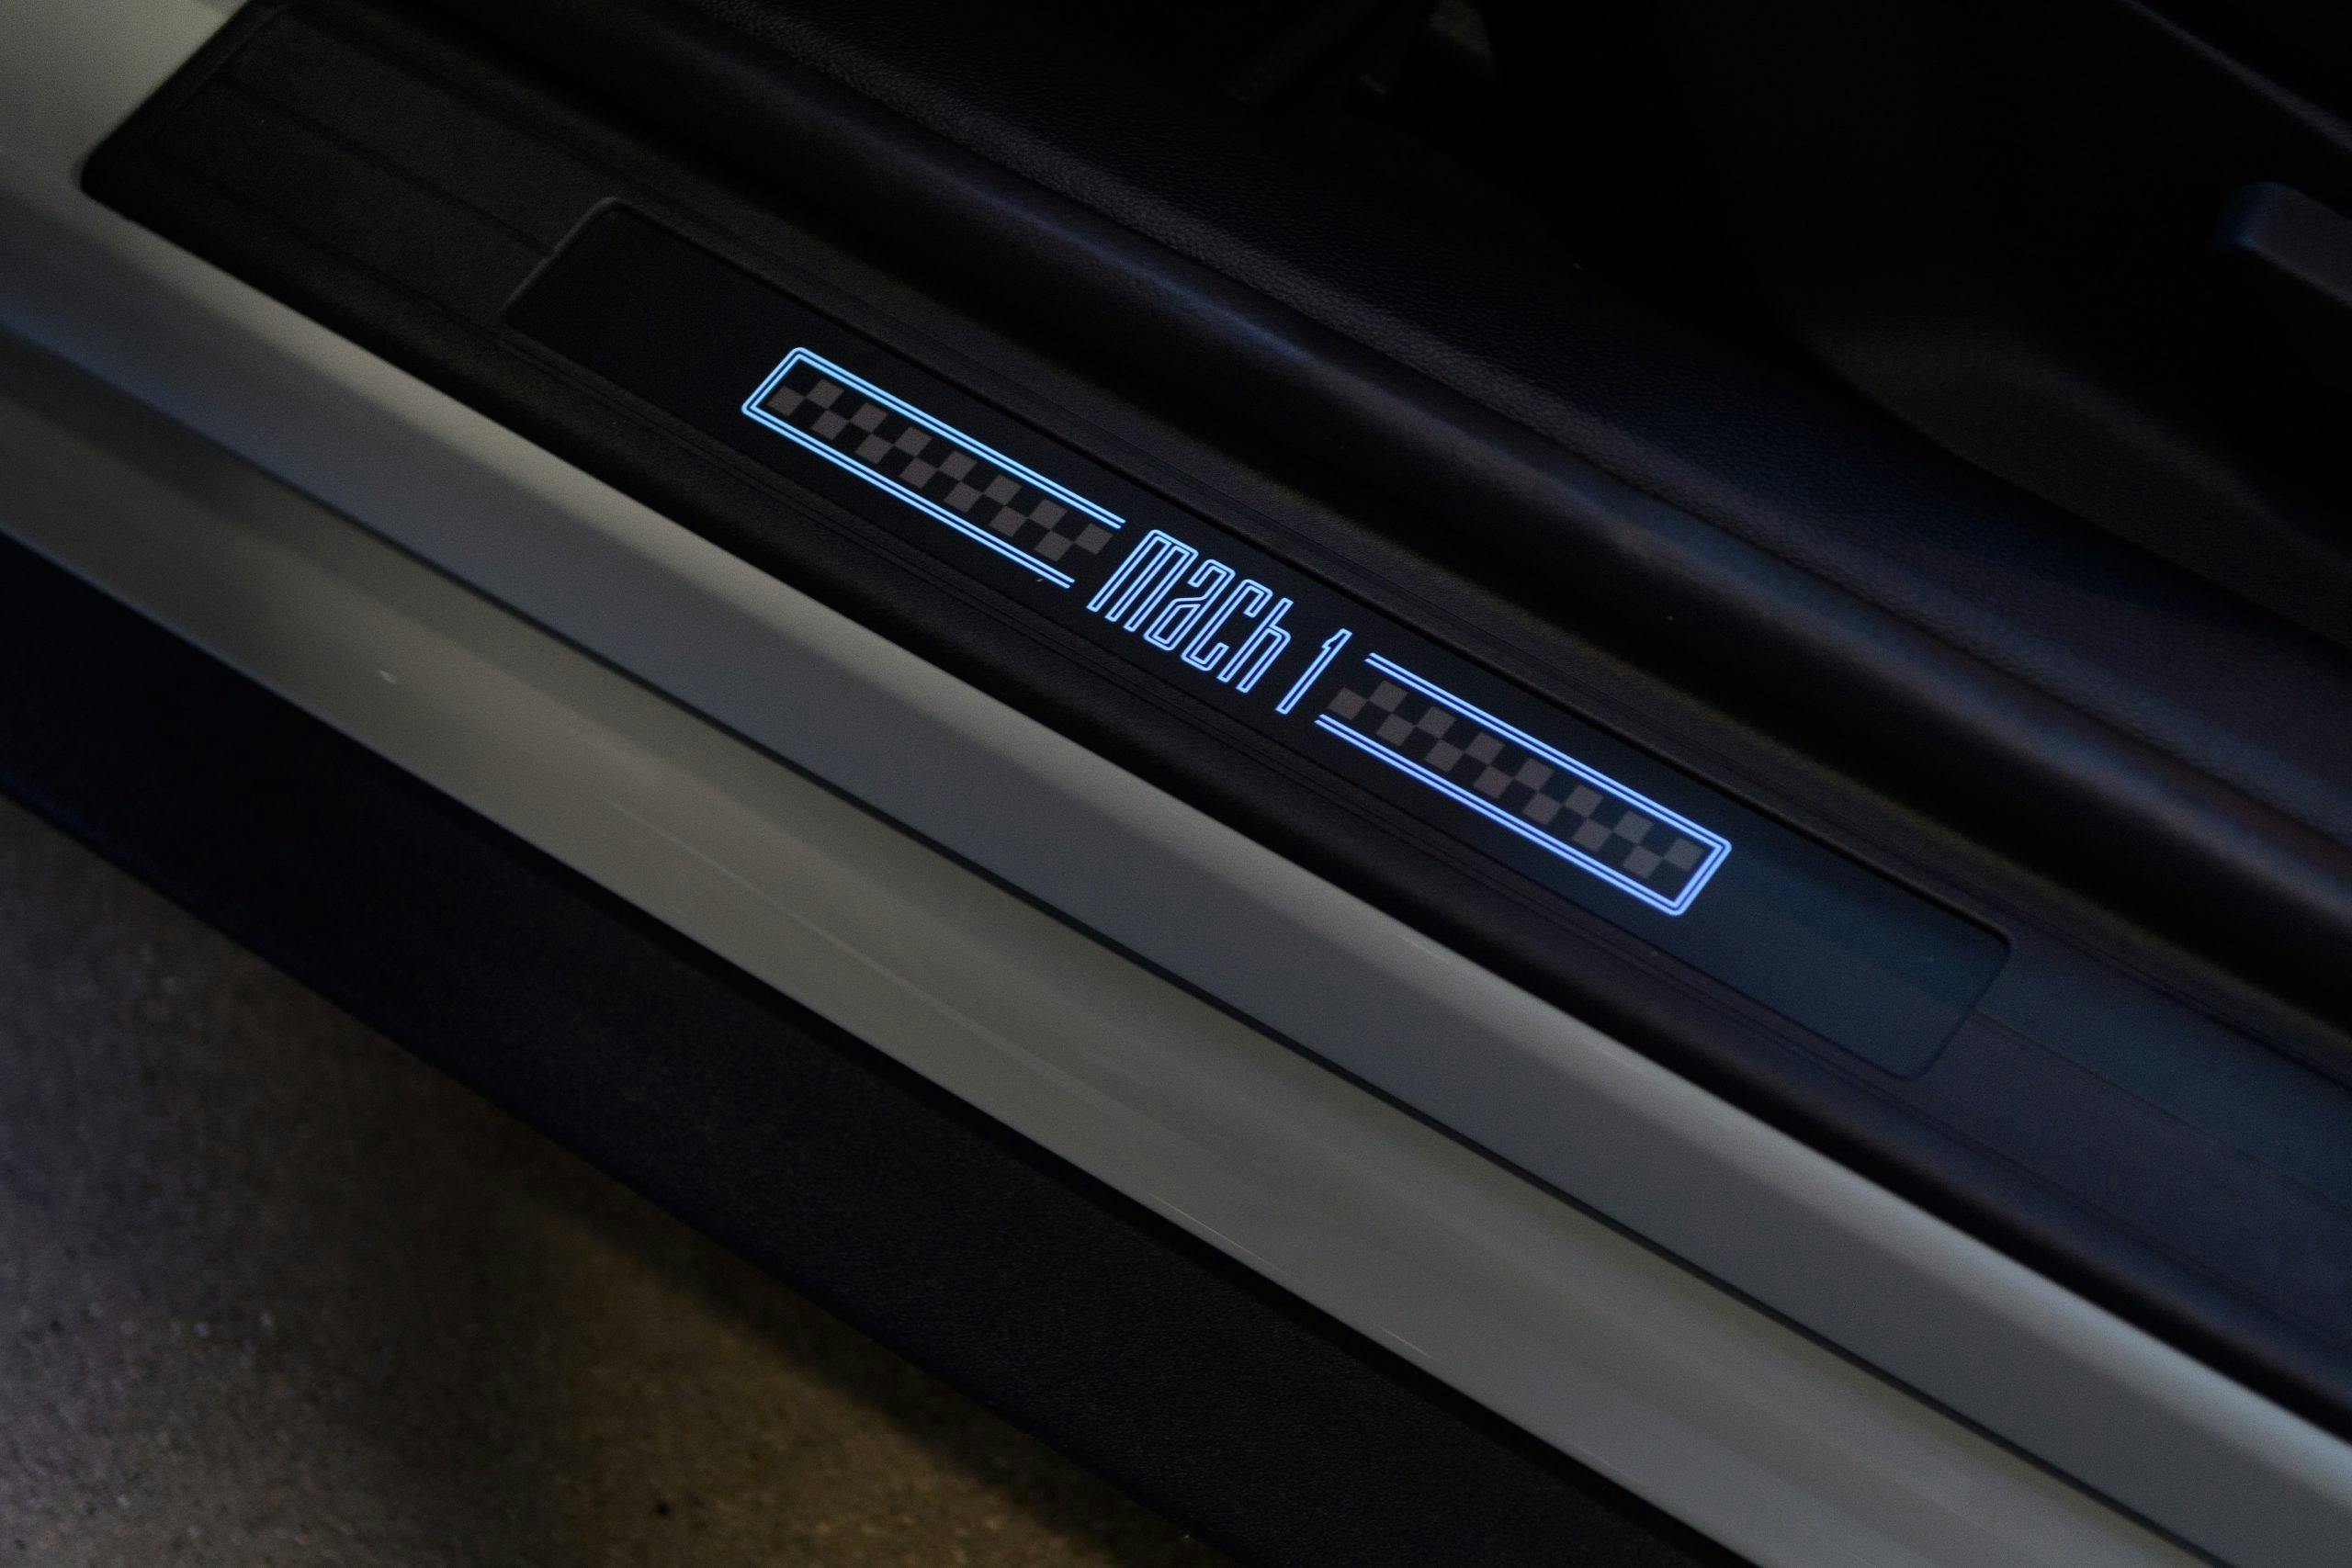 2021 Ford Mustang Mach 1 logo door sill